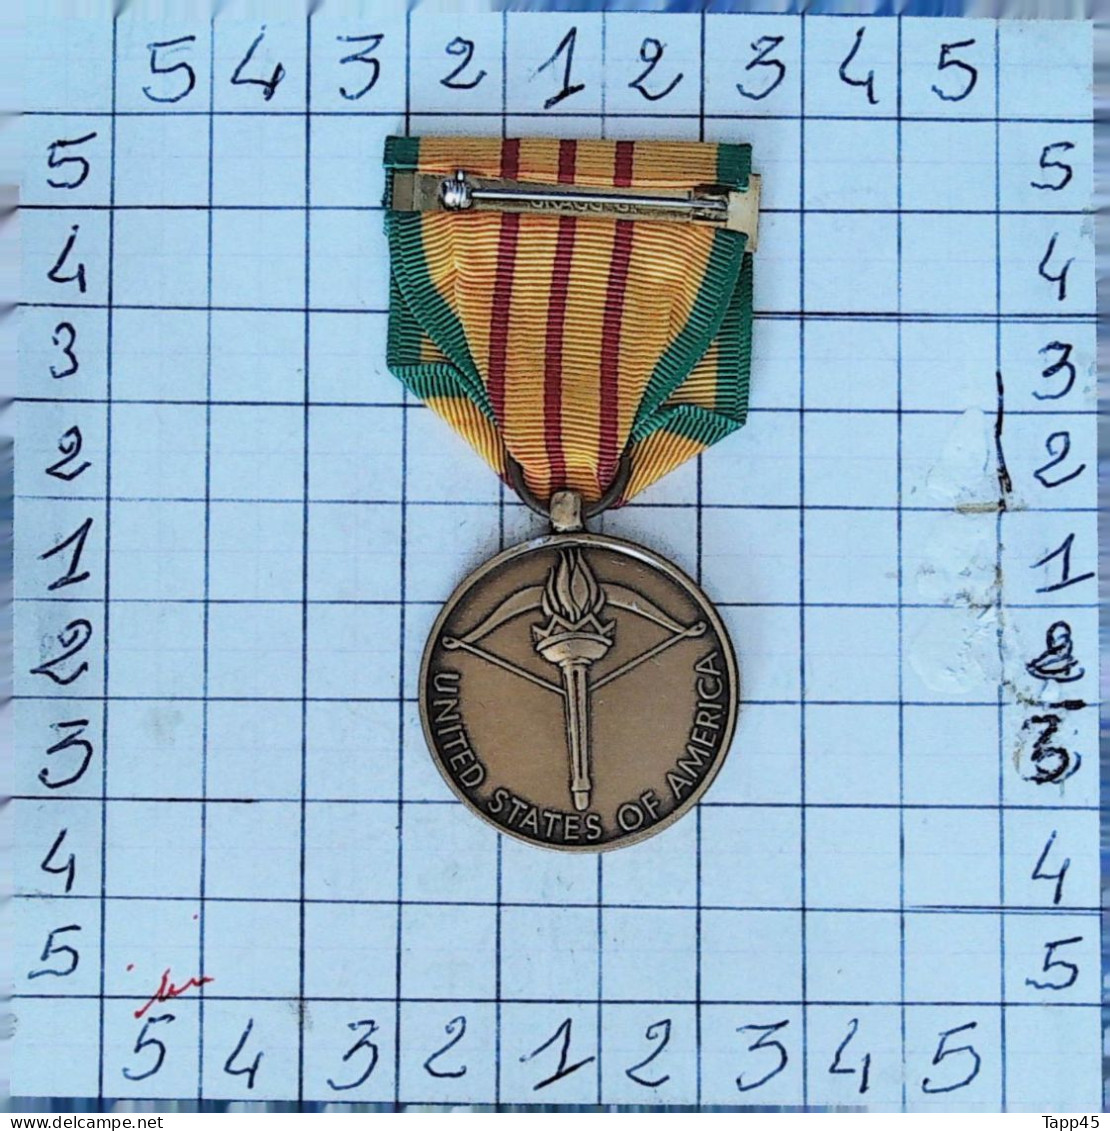 Médailles  > Dispersion d'une collection vendu au prix achetée >Vietnam Service Medal > Réf:Cl USA P 7/ 4